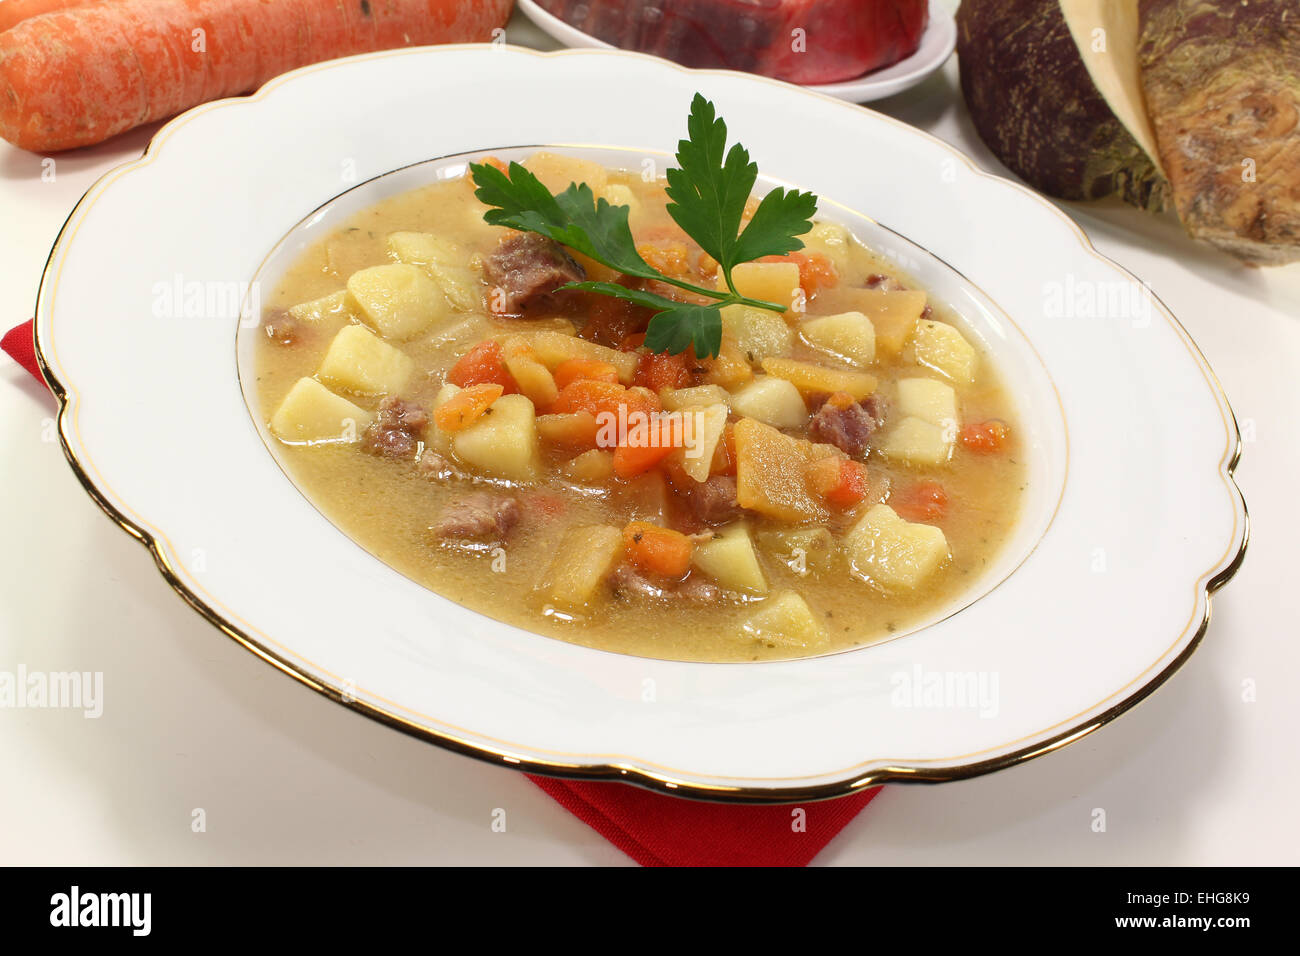 fresh cooked turnip stew Stock Photo